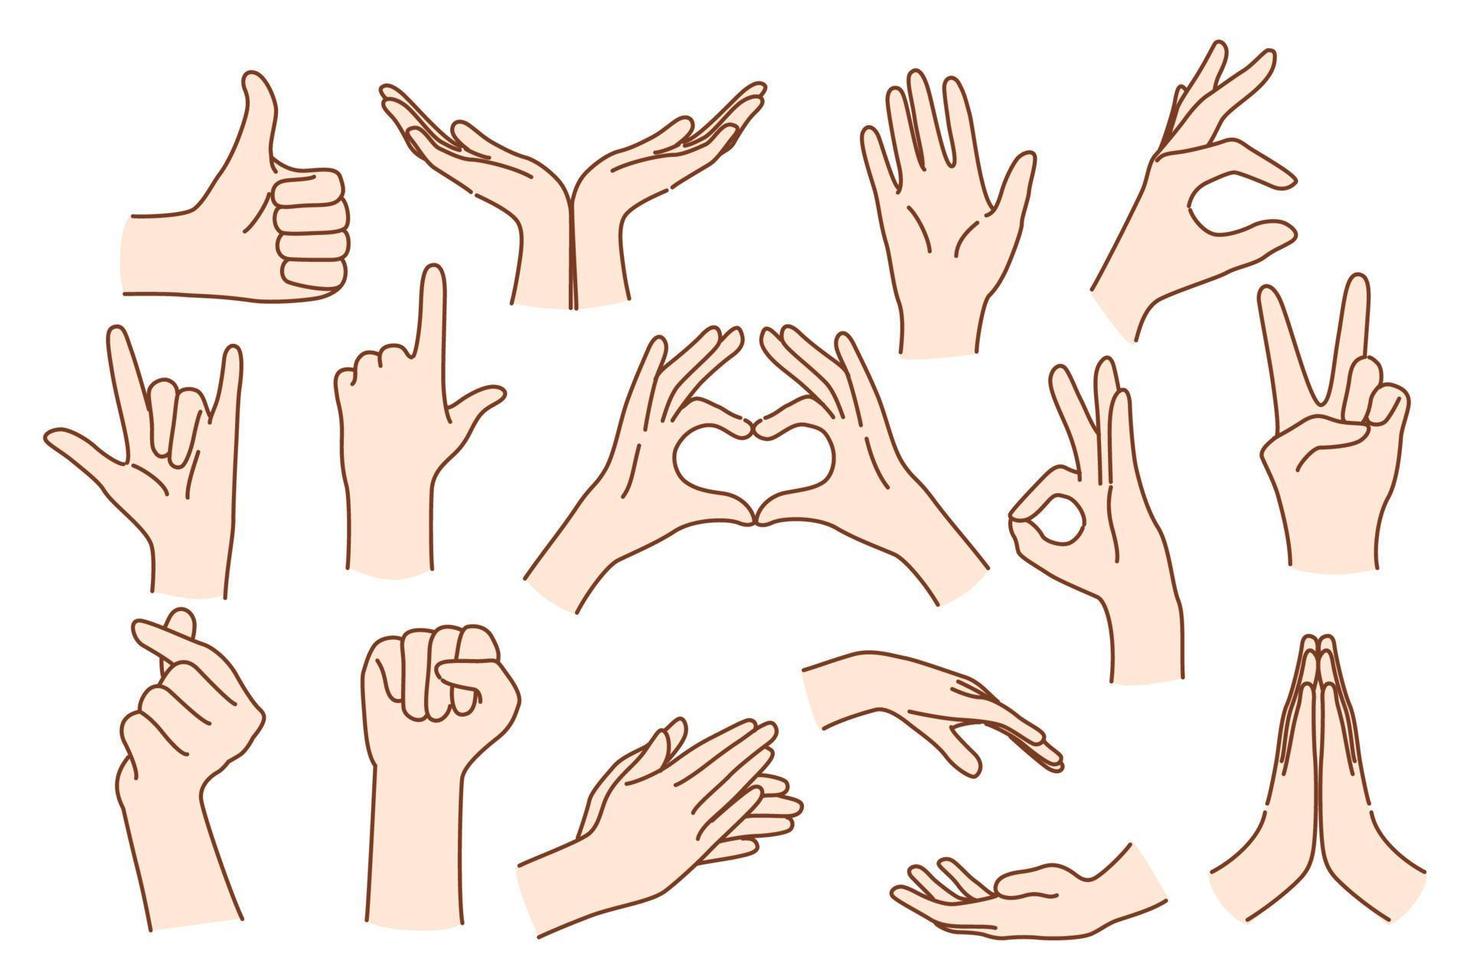 reeks van persoon handen tonen verschillend hand- gebaren uitdrukken gedachten en emoties. Mens of vrouw spreken praten gebruik makend van teken taal. non-verbaal communicatie concept. vlak vector illustratie.